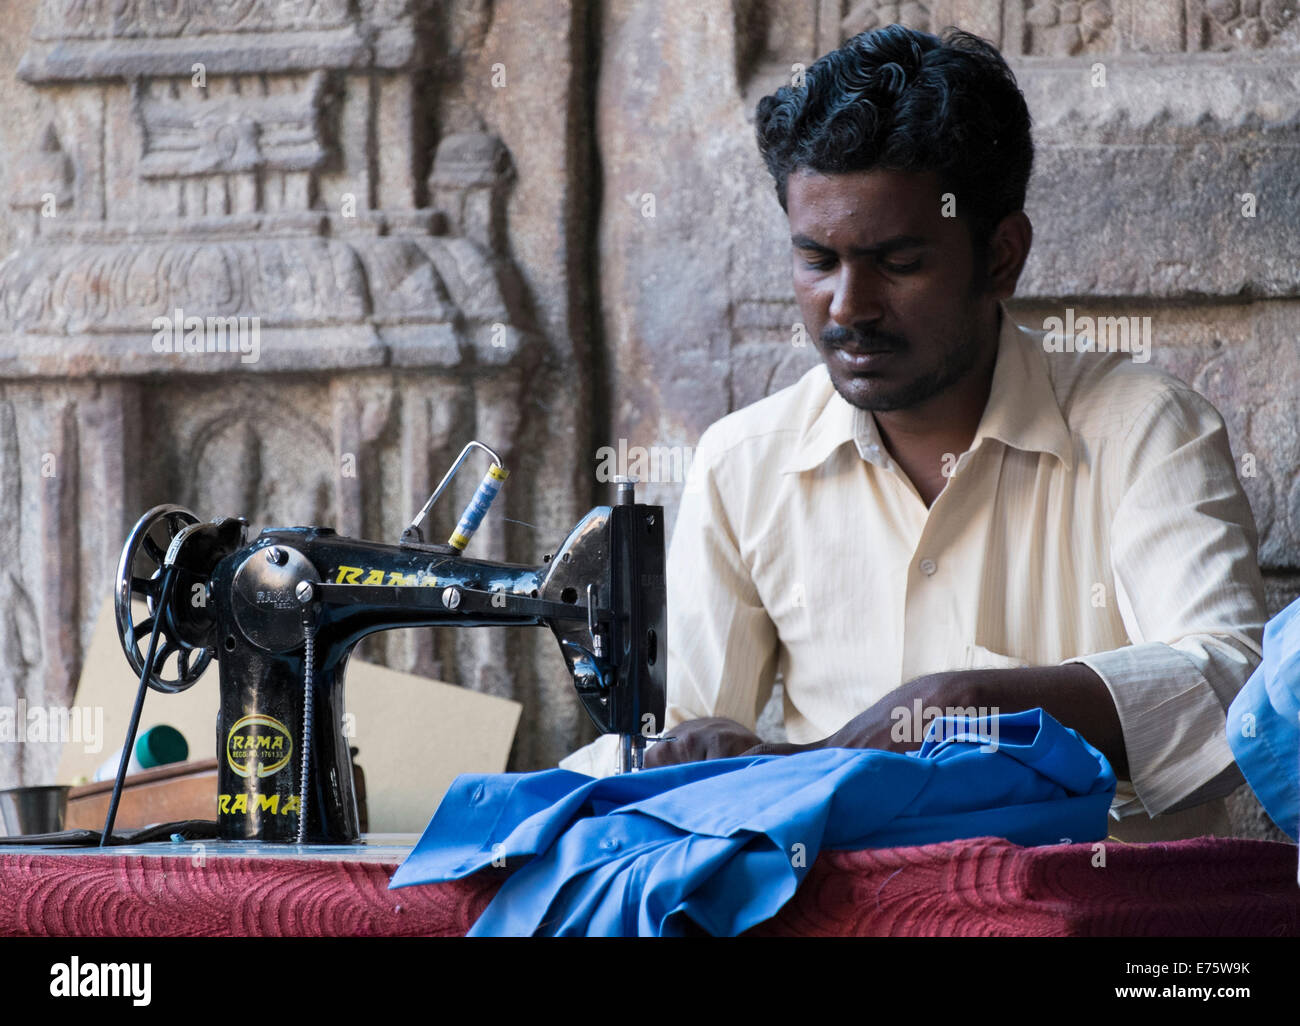 Travail sur mesure sur une machine à coudre, au marché de la mille pilier Hall, Madurai, Tamil Nadu, Inde Banque D'Images